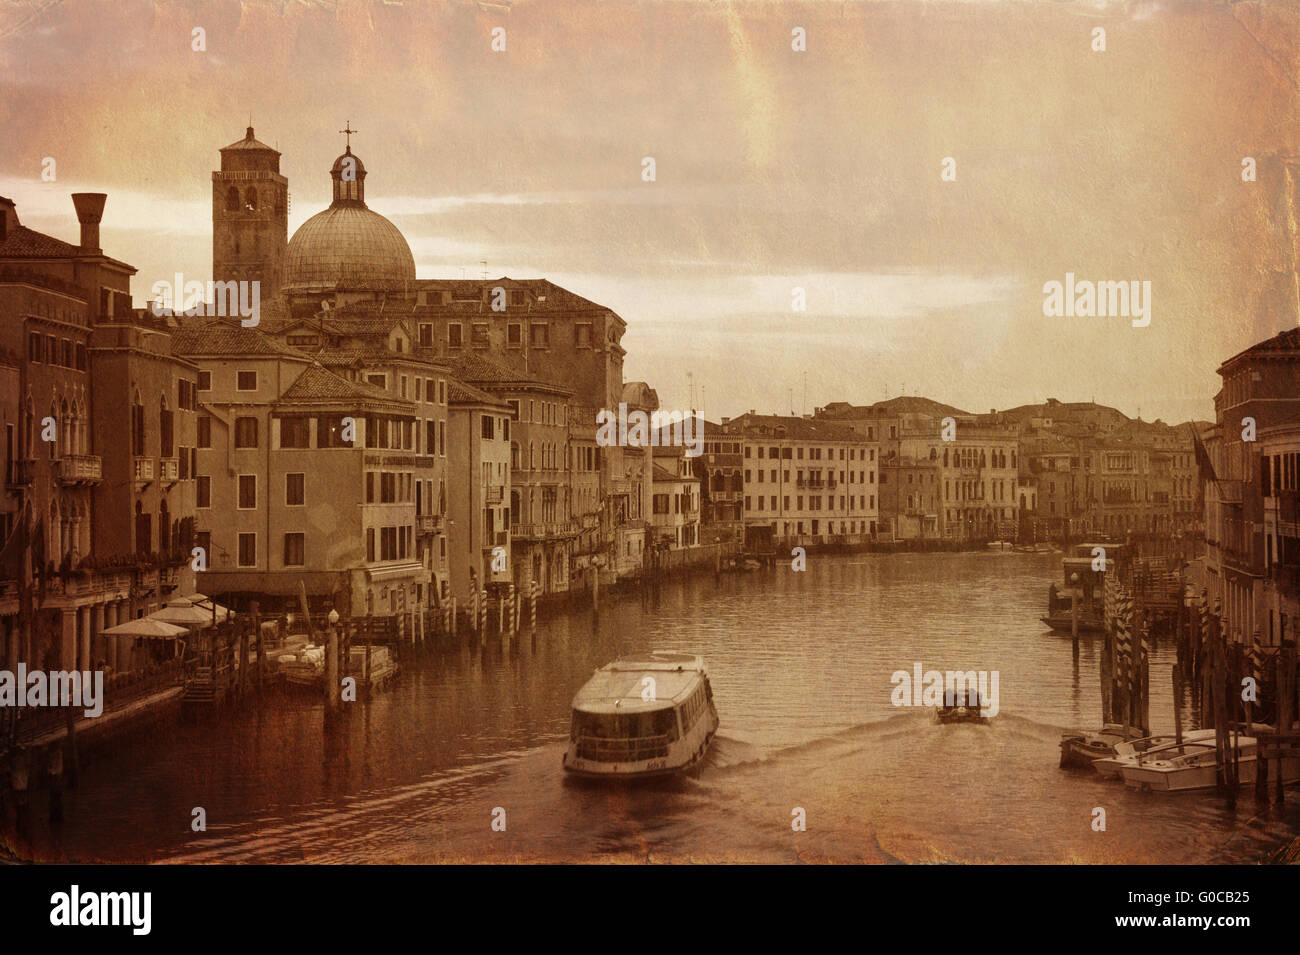 Foto de estilo Vintage Grand Canal en Venecia. Foto de stock